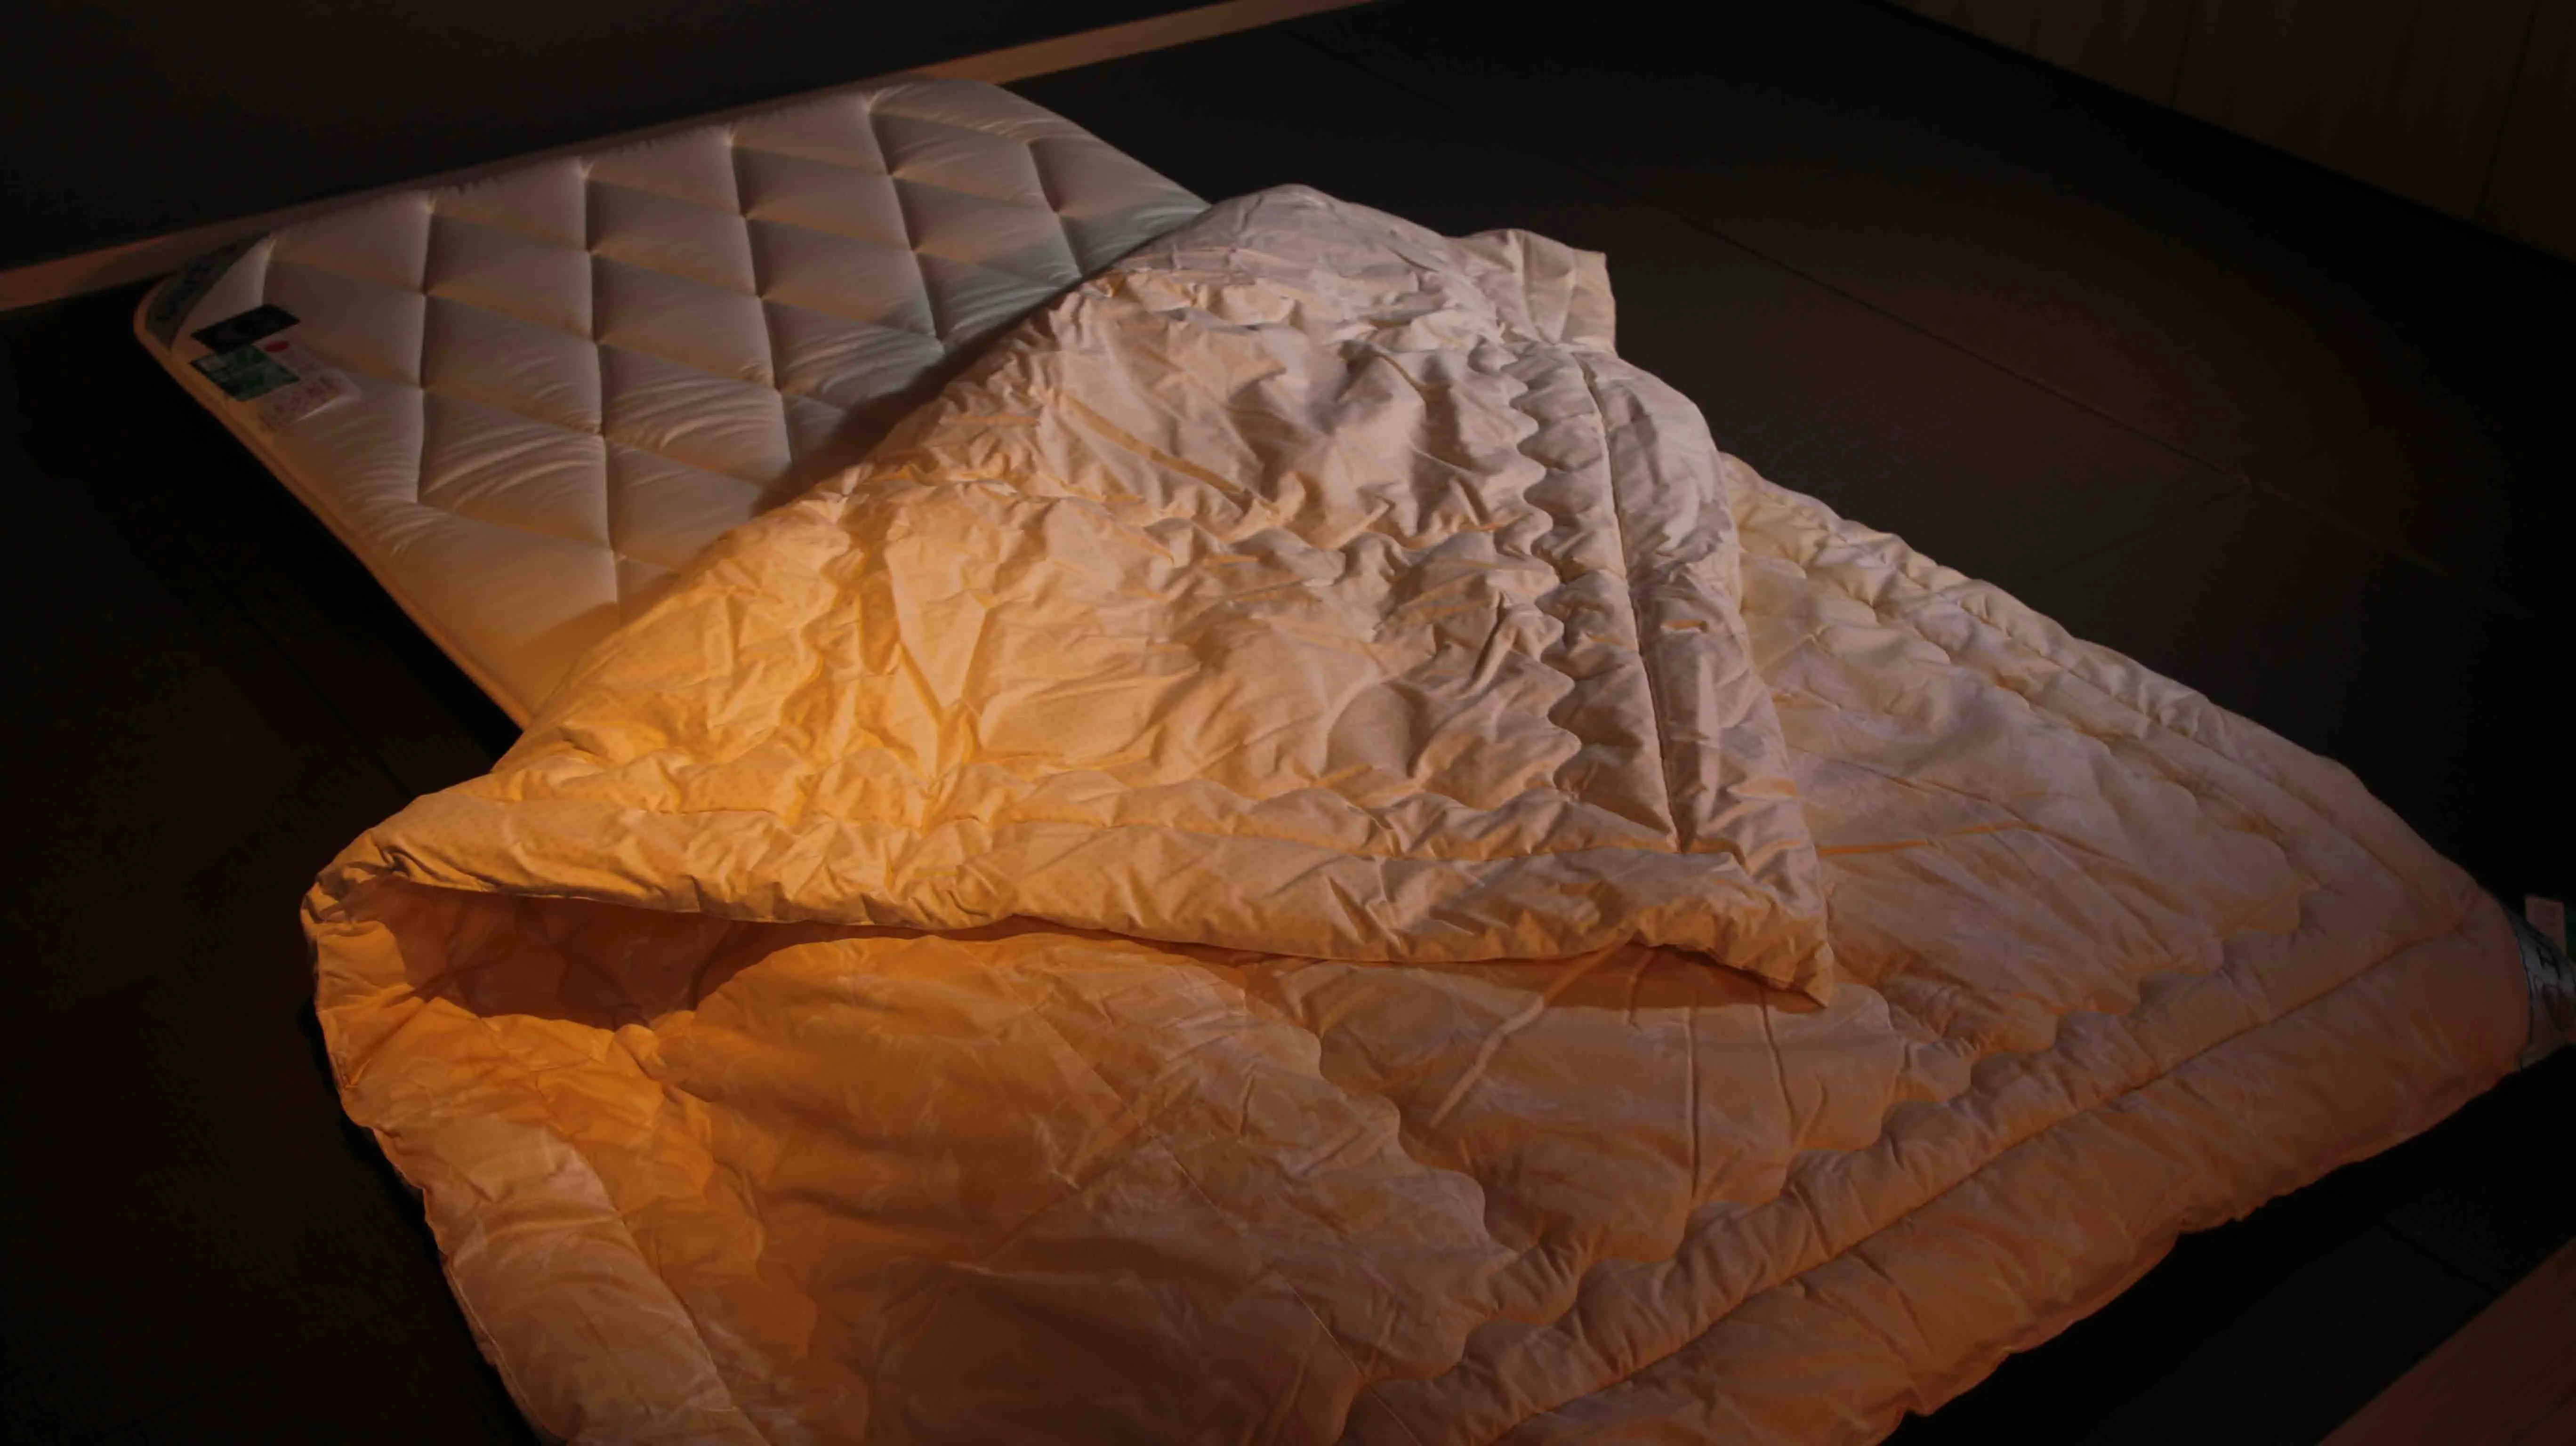 Мягкое хлопковое одеяло, постельное белье с экологически чистым материалом